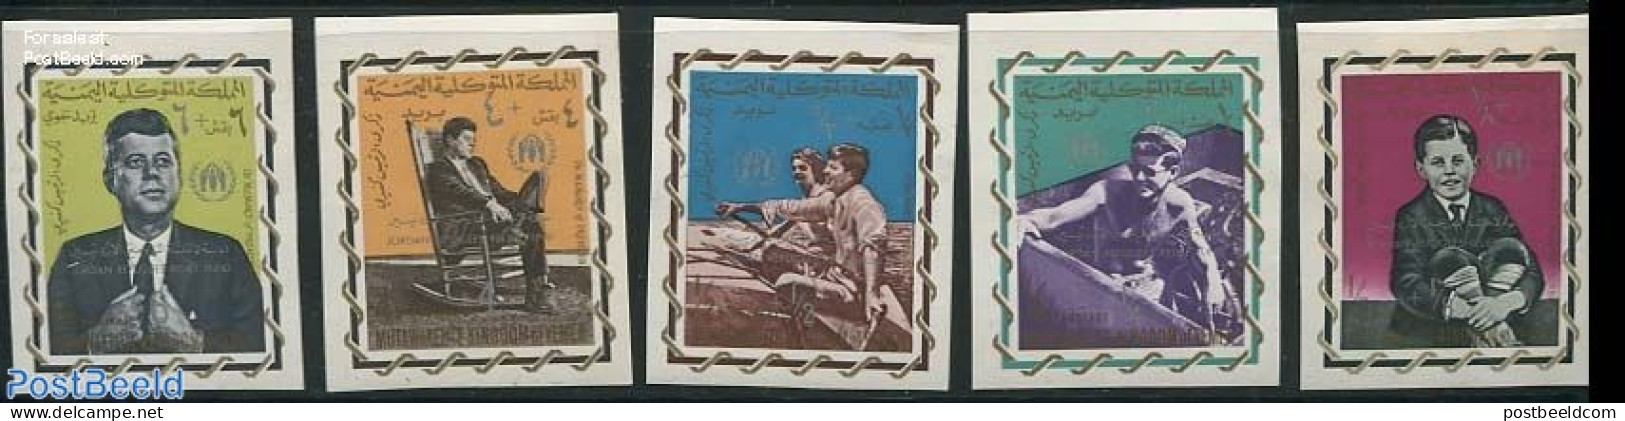 Yemen, Kingdom 1967 Refugees Overprints 5v, Imperforated, Mint NH, History - Transport - American Presidents - Refugee.. - Réfugiés